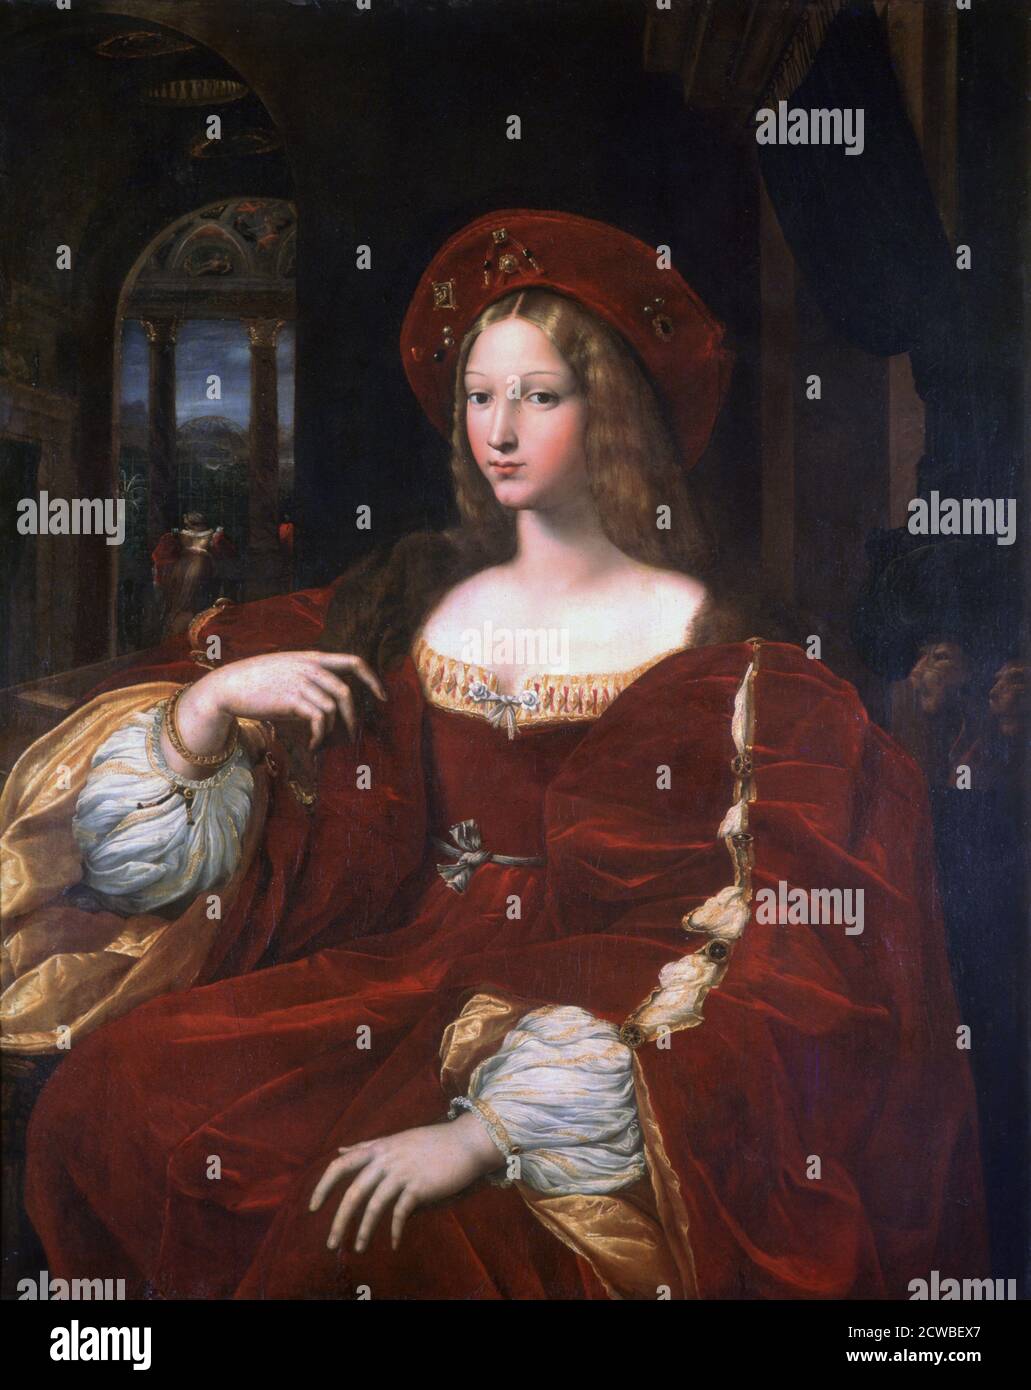 Portrait de Jeanne d'Aragon, 1518. Artiste: Raphaël. Raphael(1483-1520) est un peintre et architecte italien de la haute Renaissance. Son travail est admiré pour sa clarté de forme, sa facilité de composition et sa réalisation visuelle de grandeur humaine. Banque D'Images